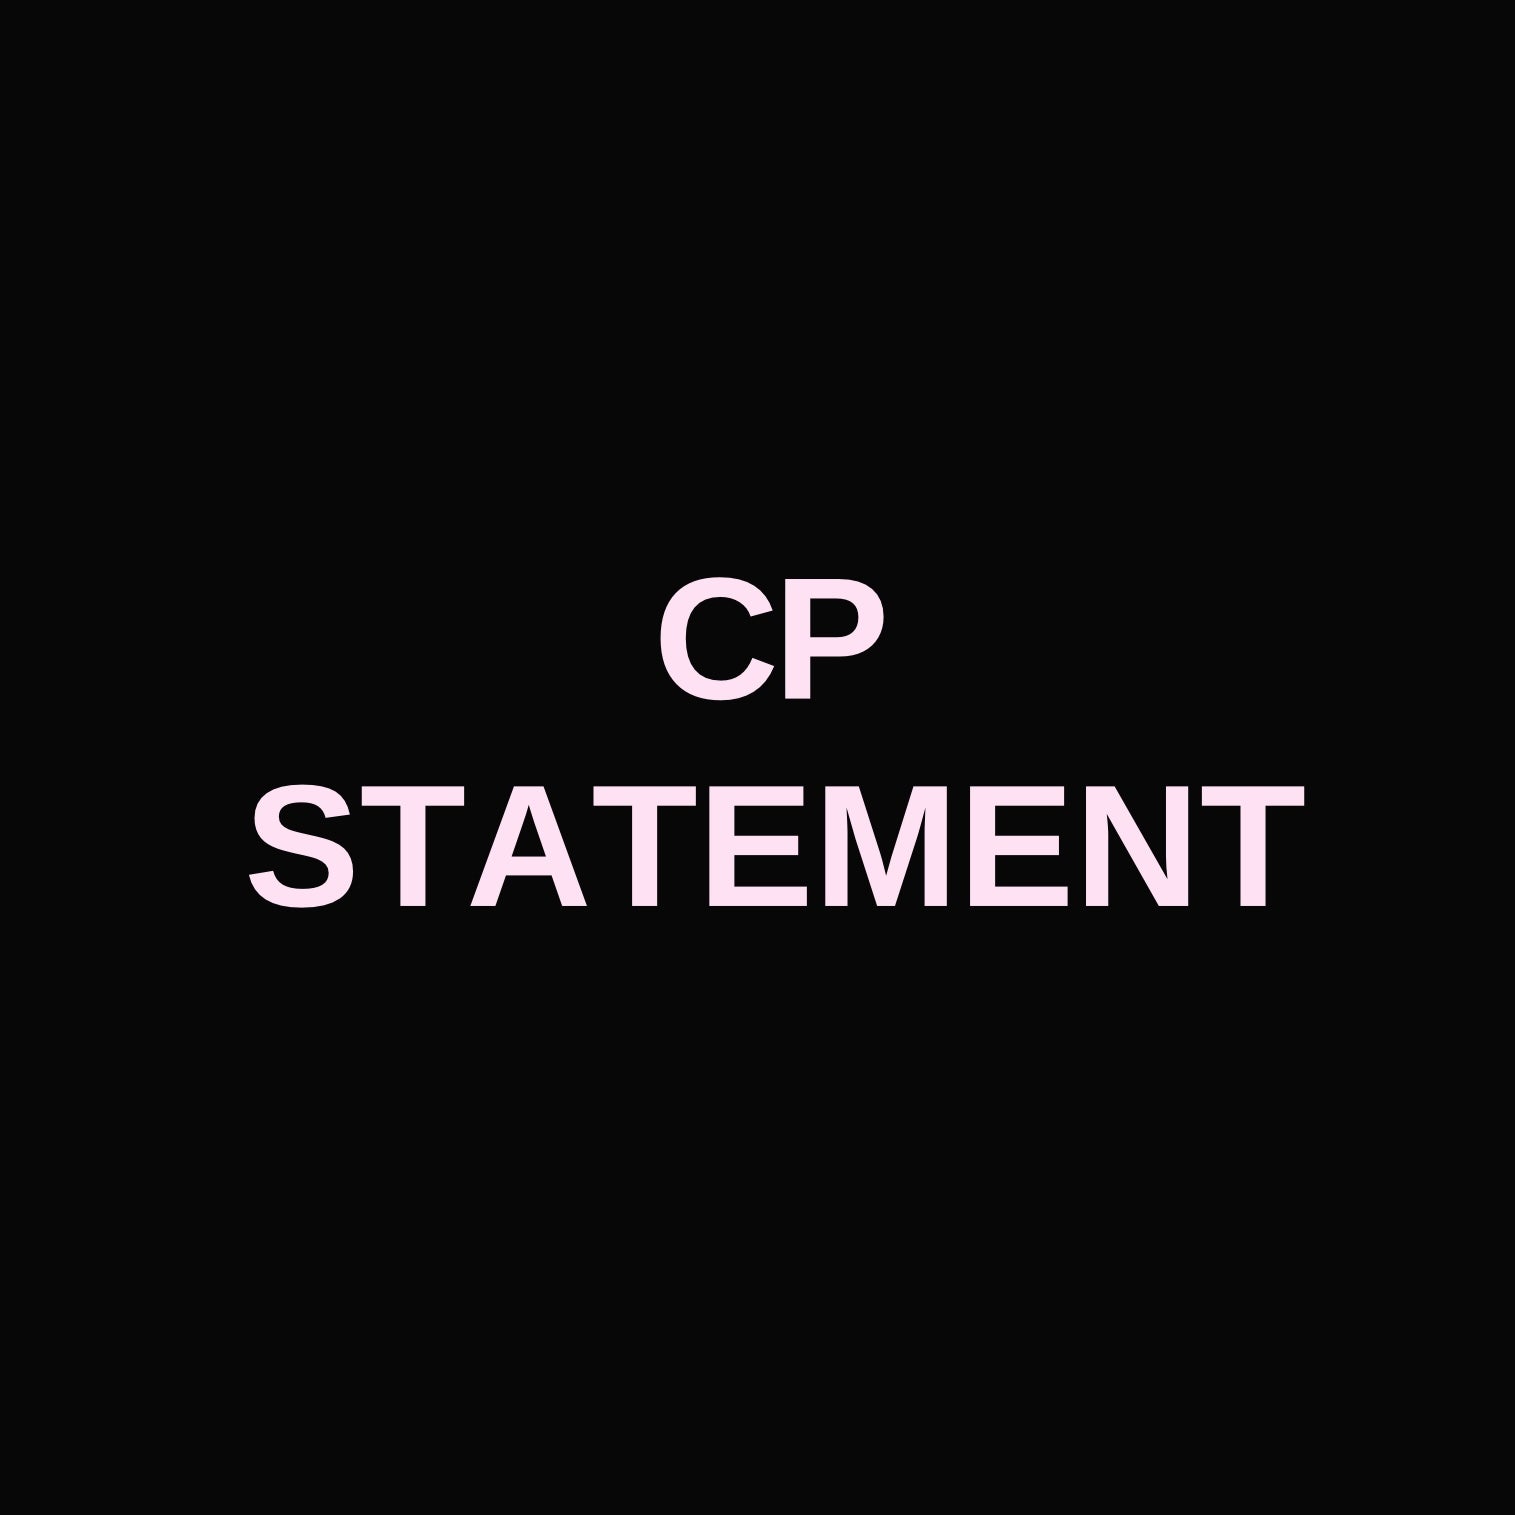 CP STATEMENT